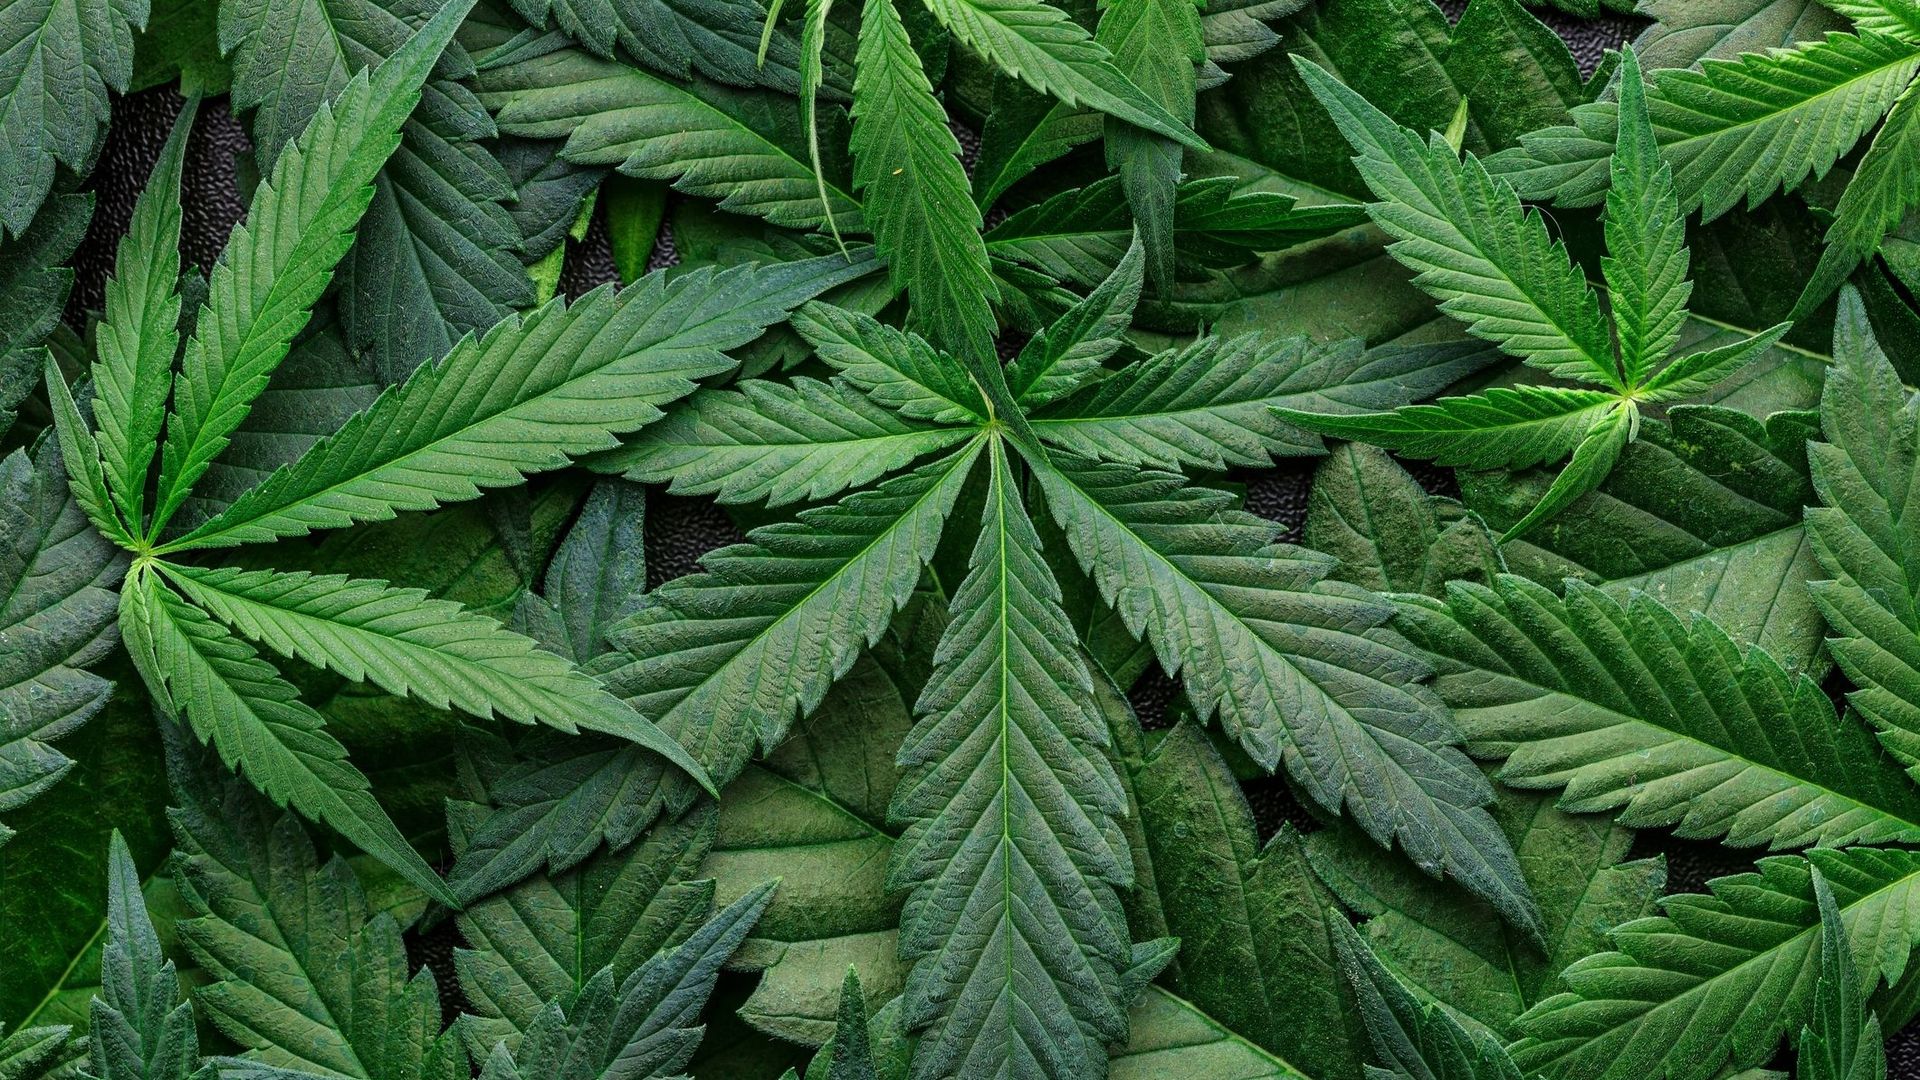 La consommation de marijuana en hausse chez les jeunes Américains, selon une étude.